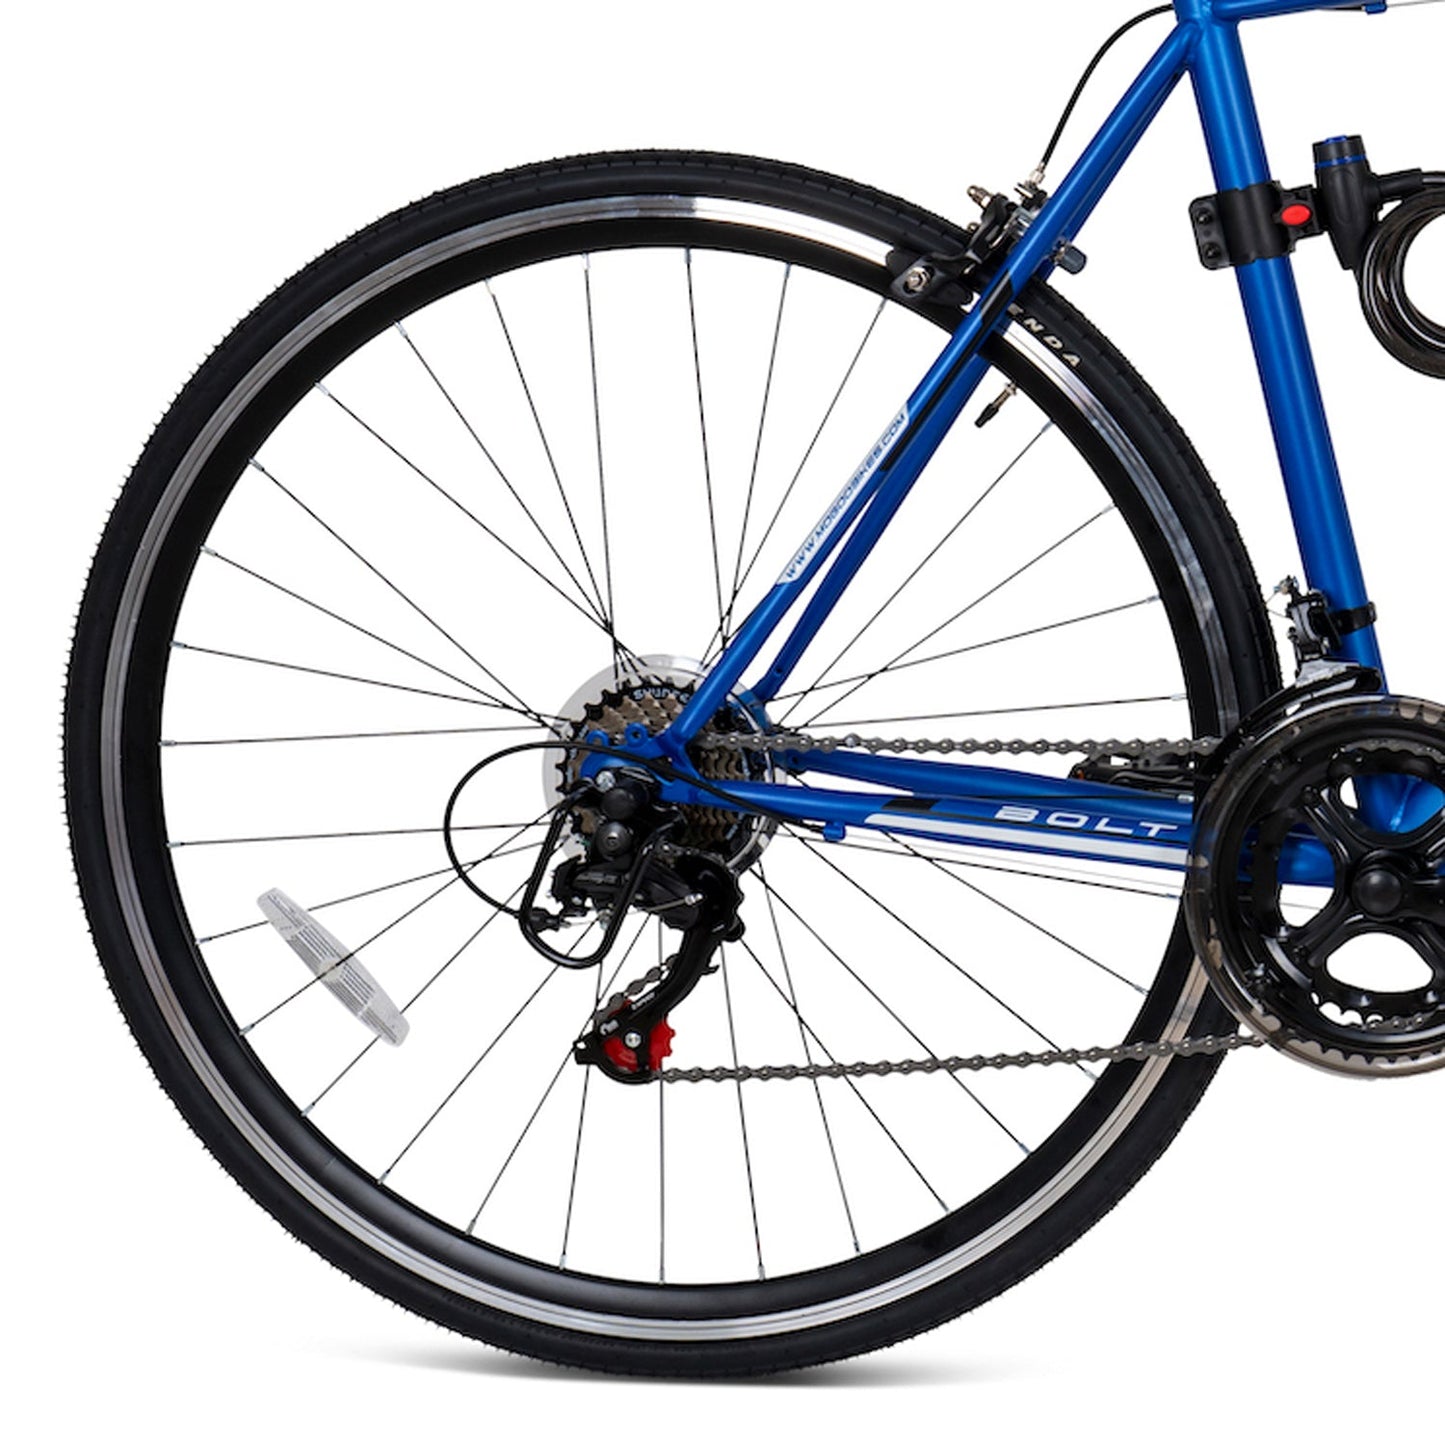 Bolt MTB Road Bike 700C - 56cm - Blue